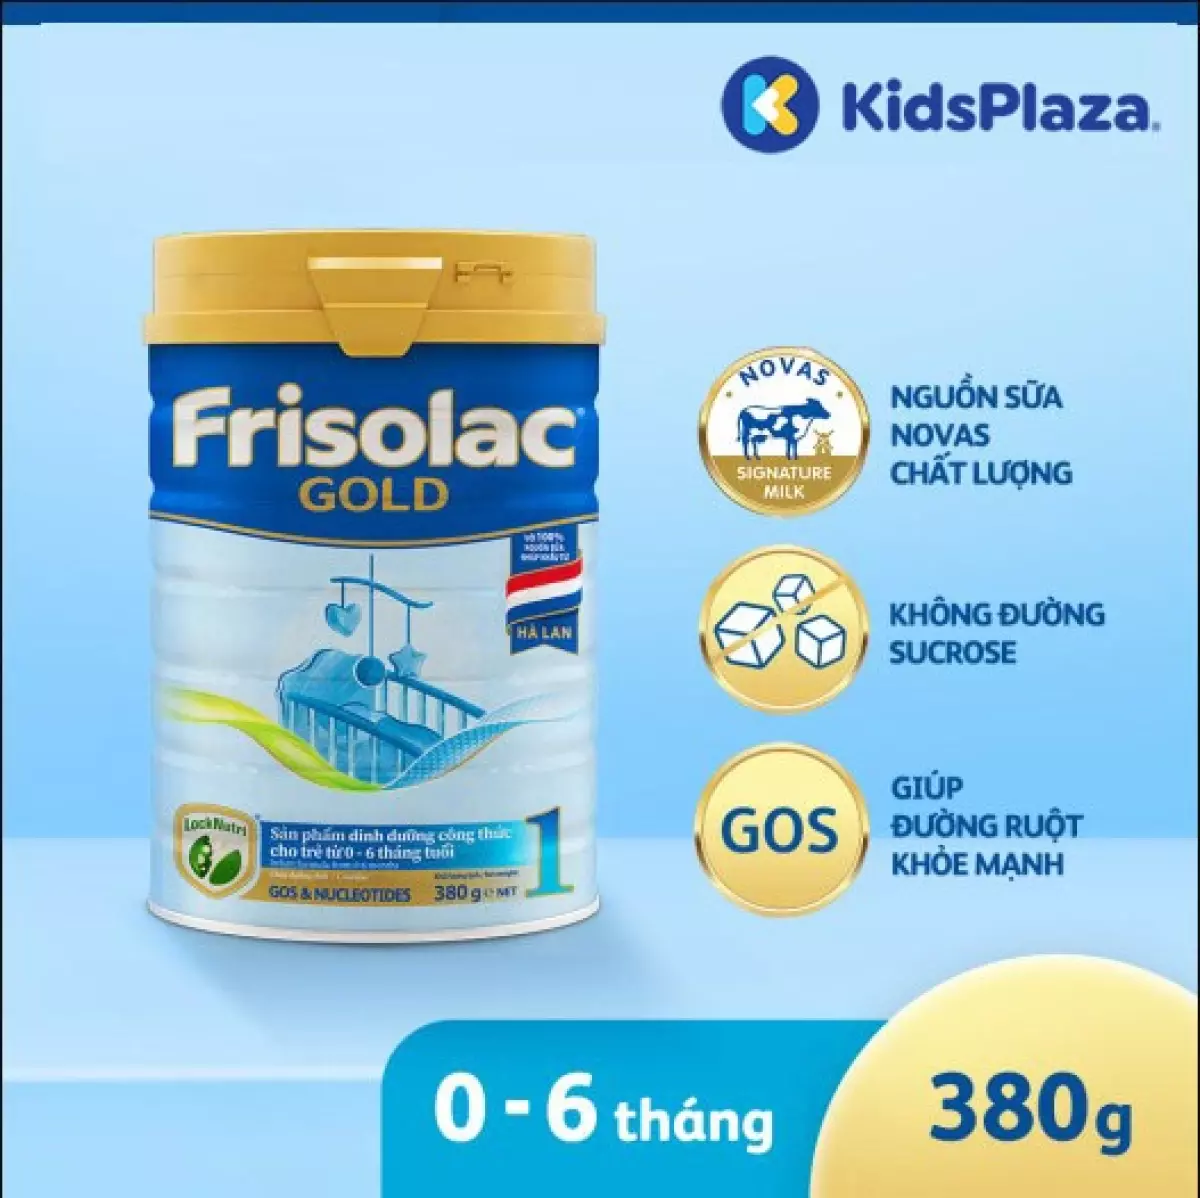 Sữa Frisolac Gold 1 380g cho bé 0-6 tháng